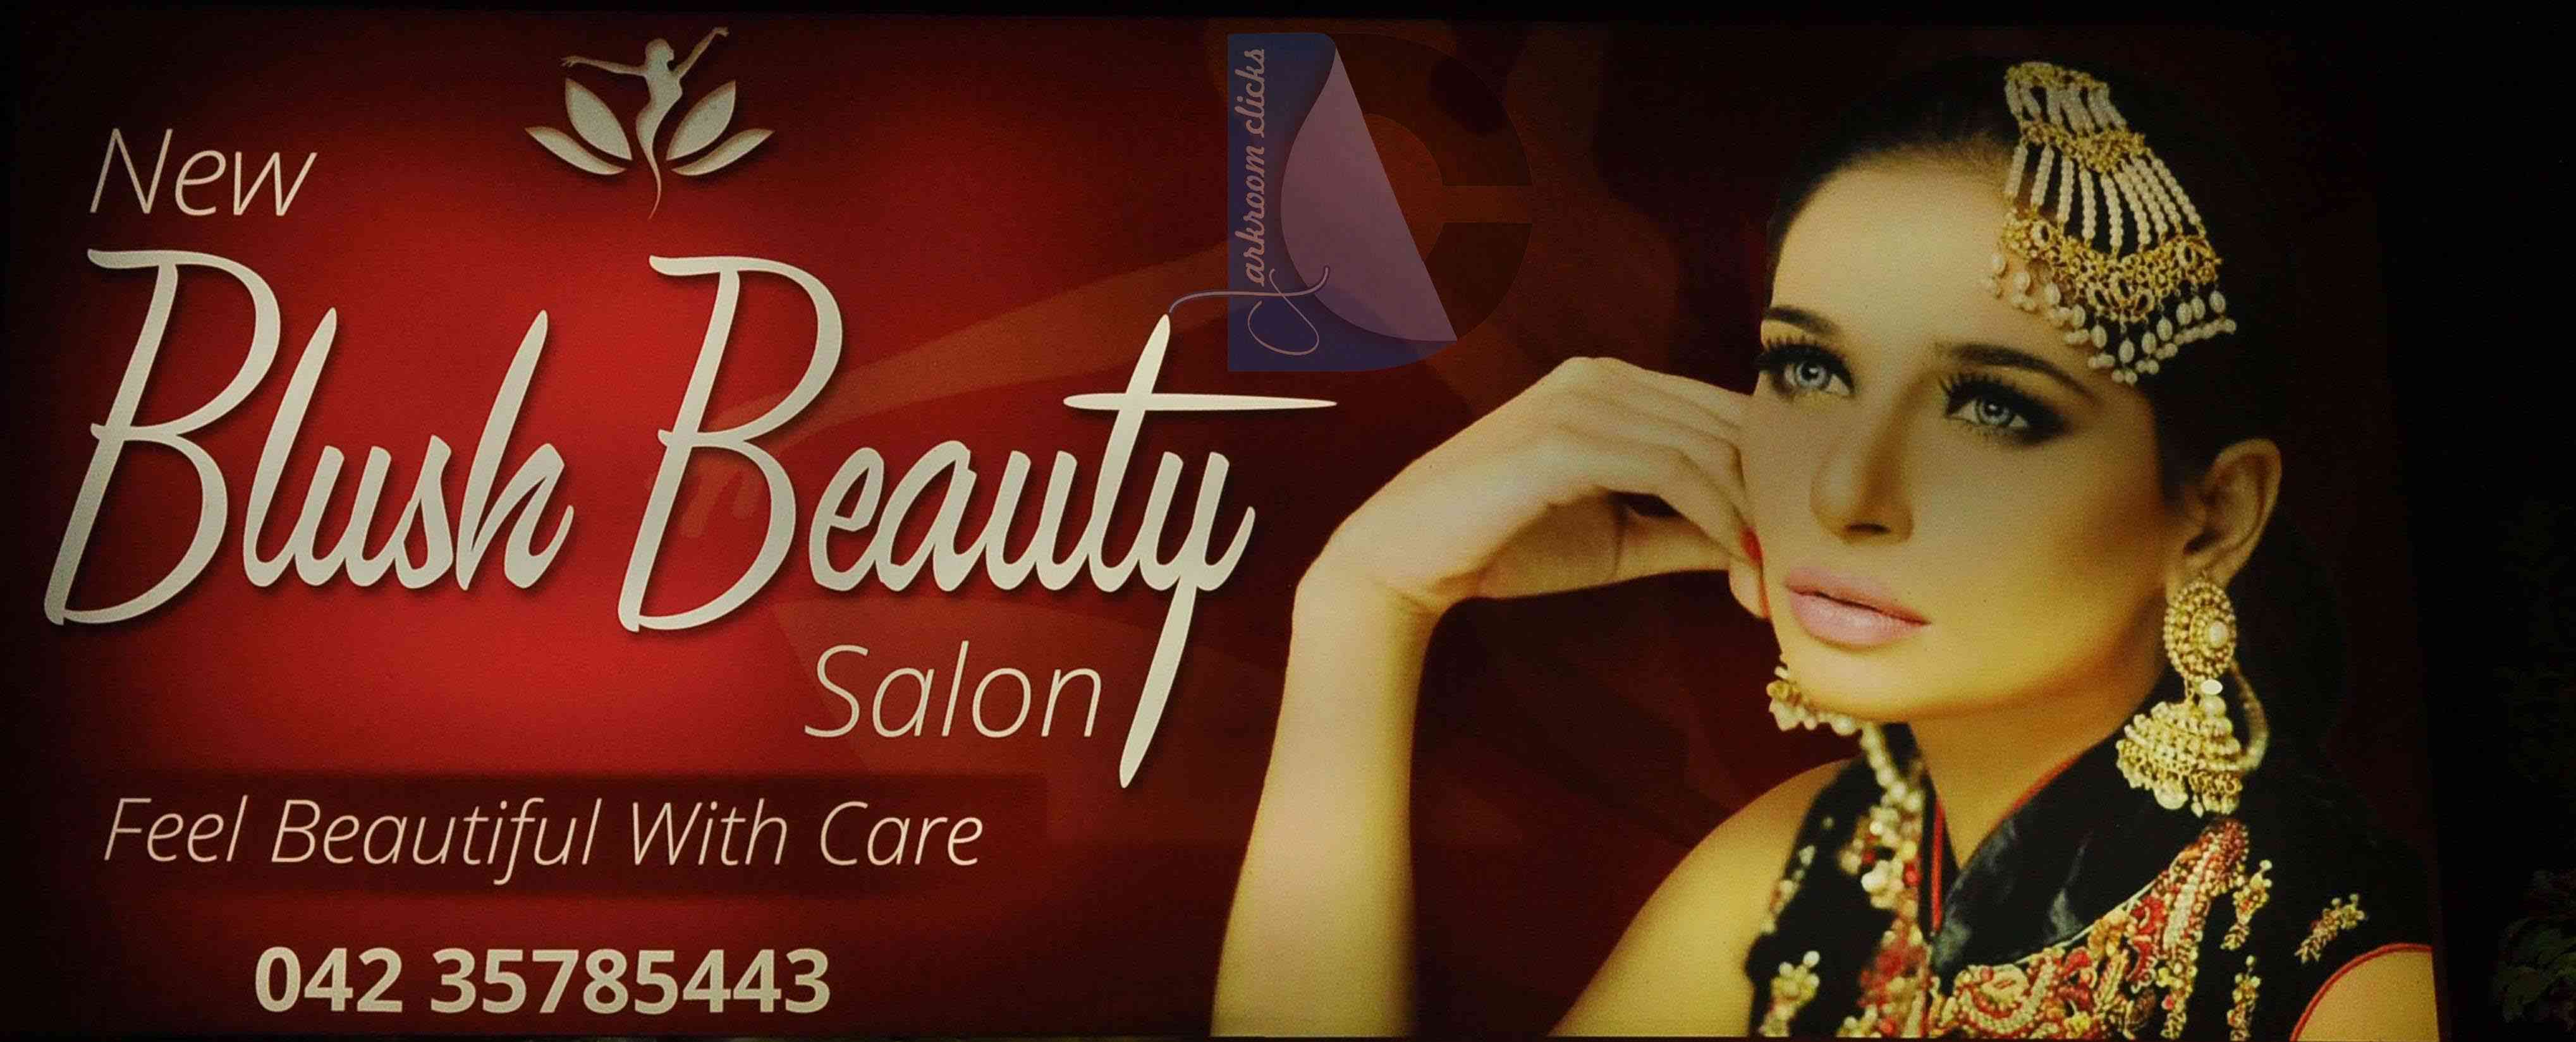 New Blush Beauty Salon